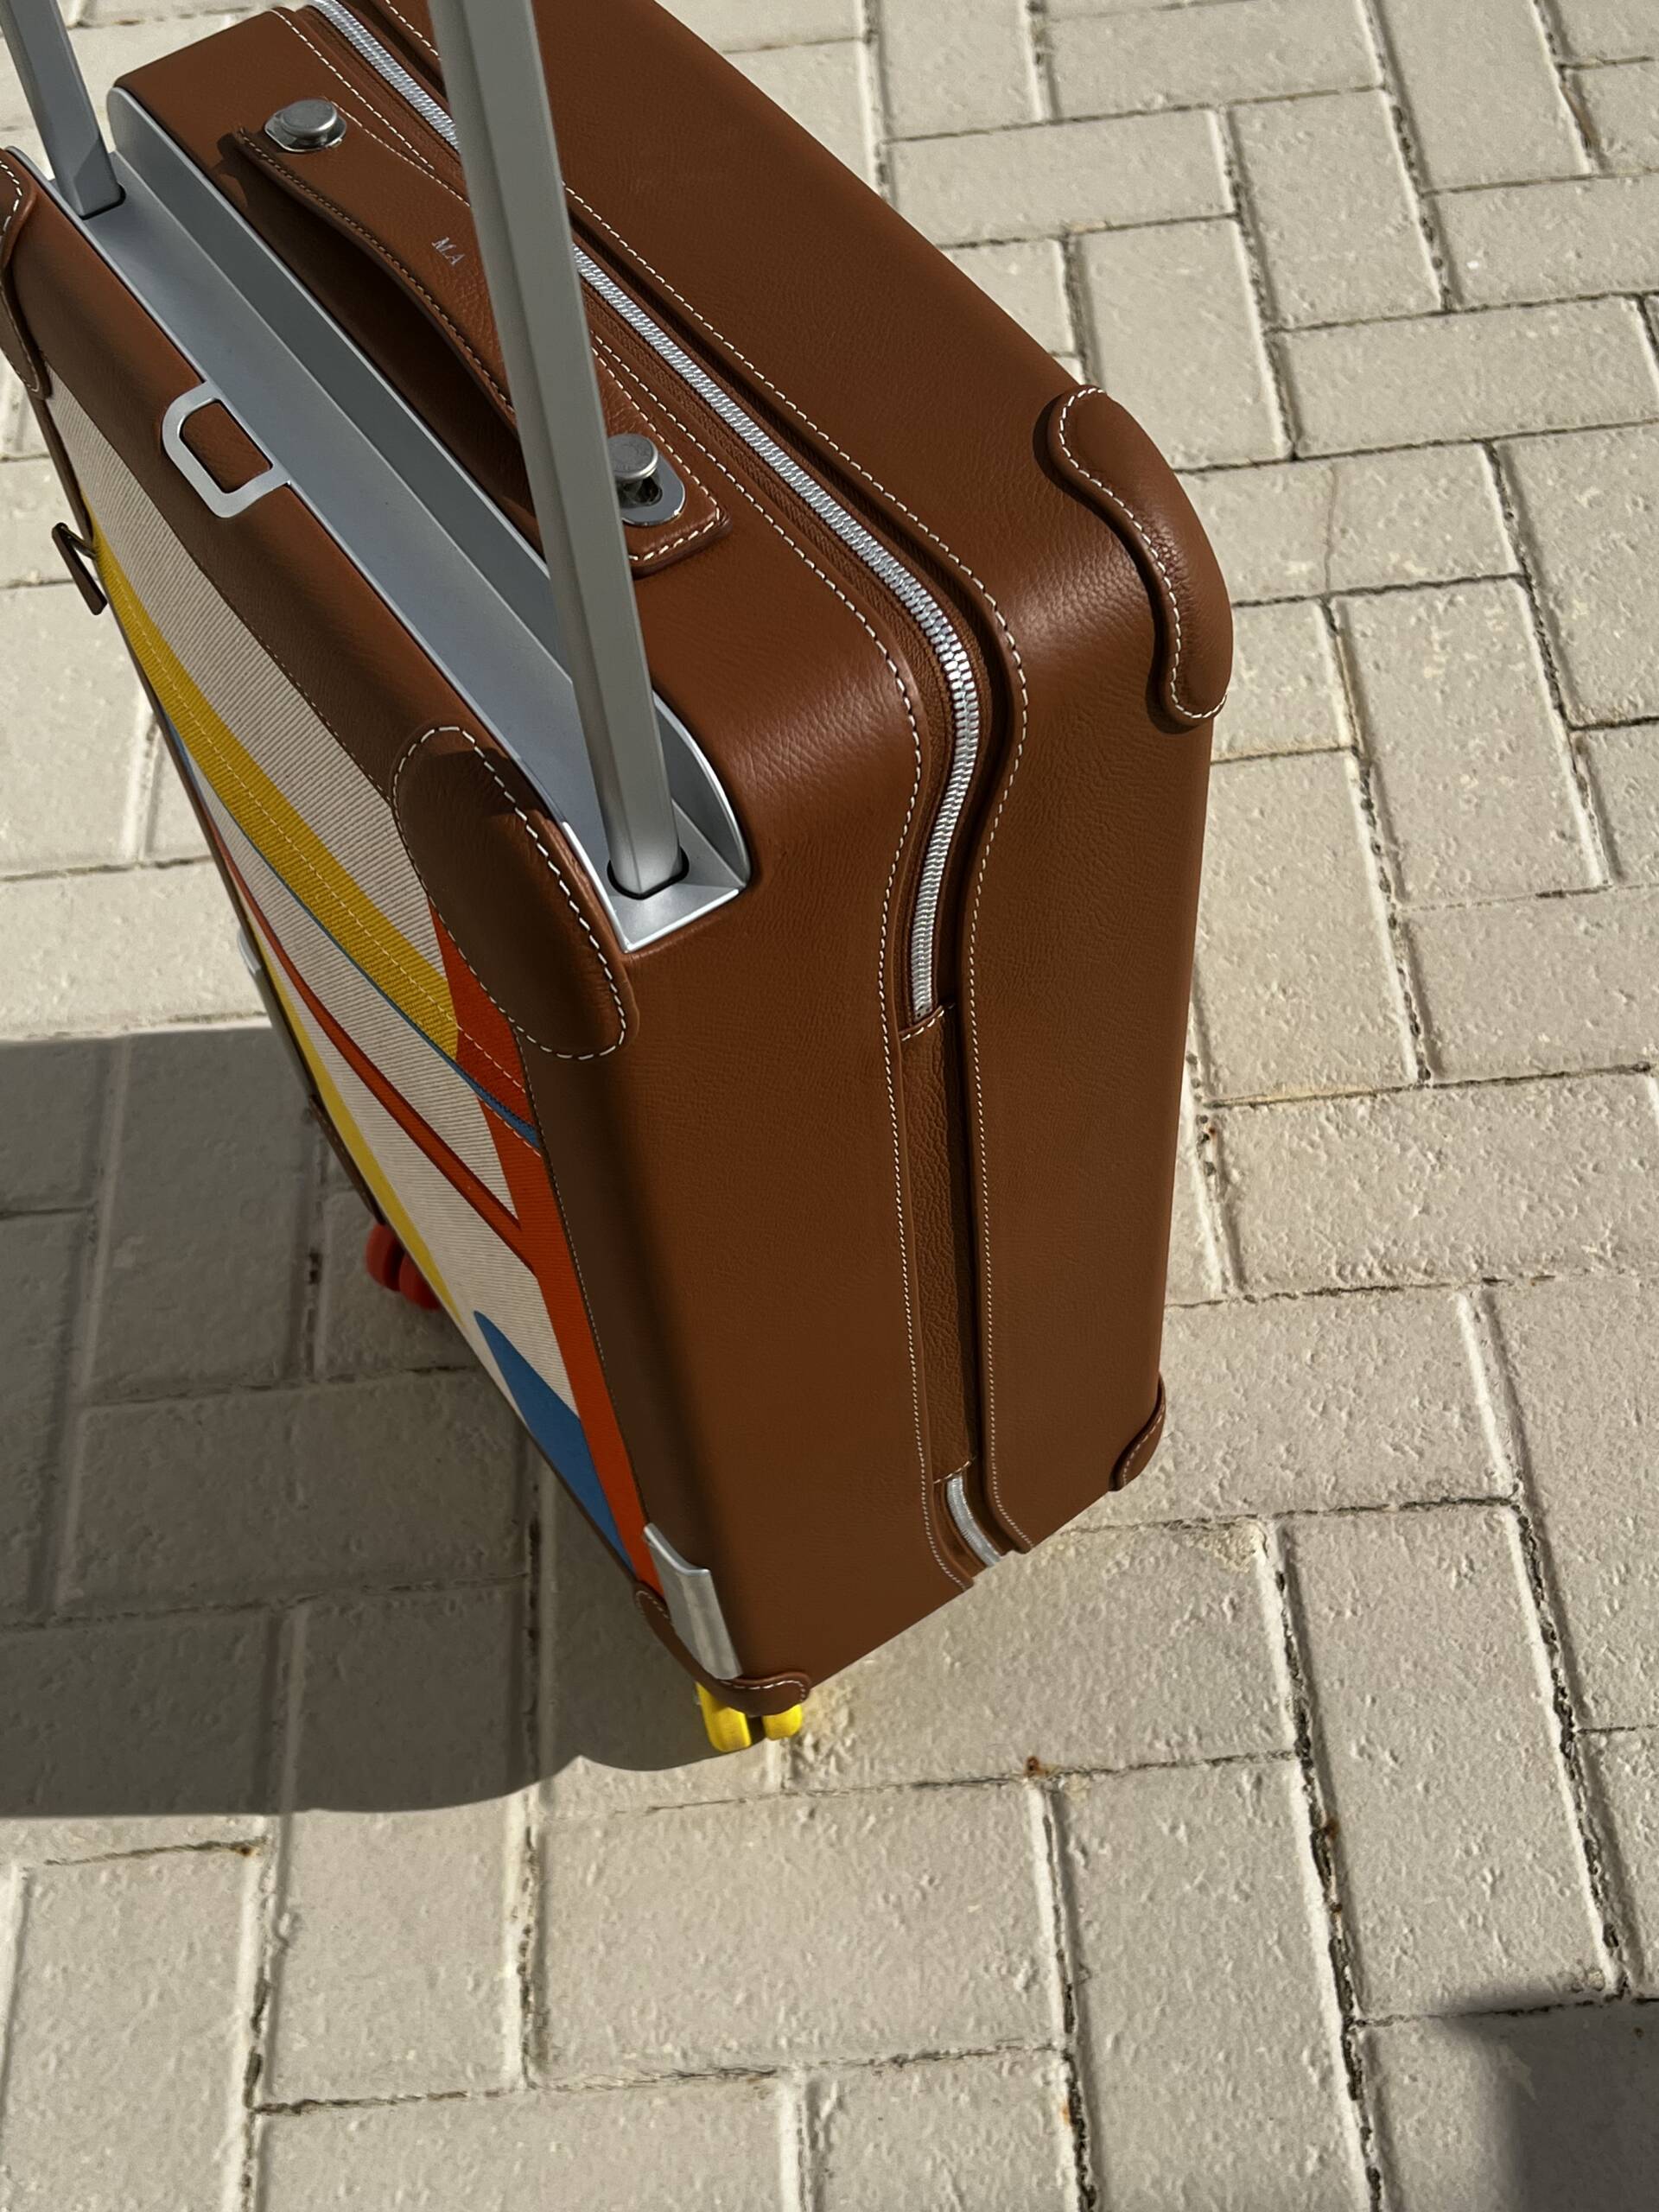 Sport bag Louis Vuitton - valise louis vuitton bagage hermes valise lv  valises vuitton - Des Voyages